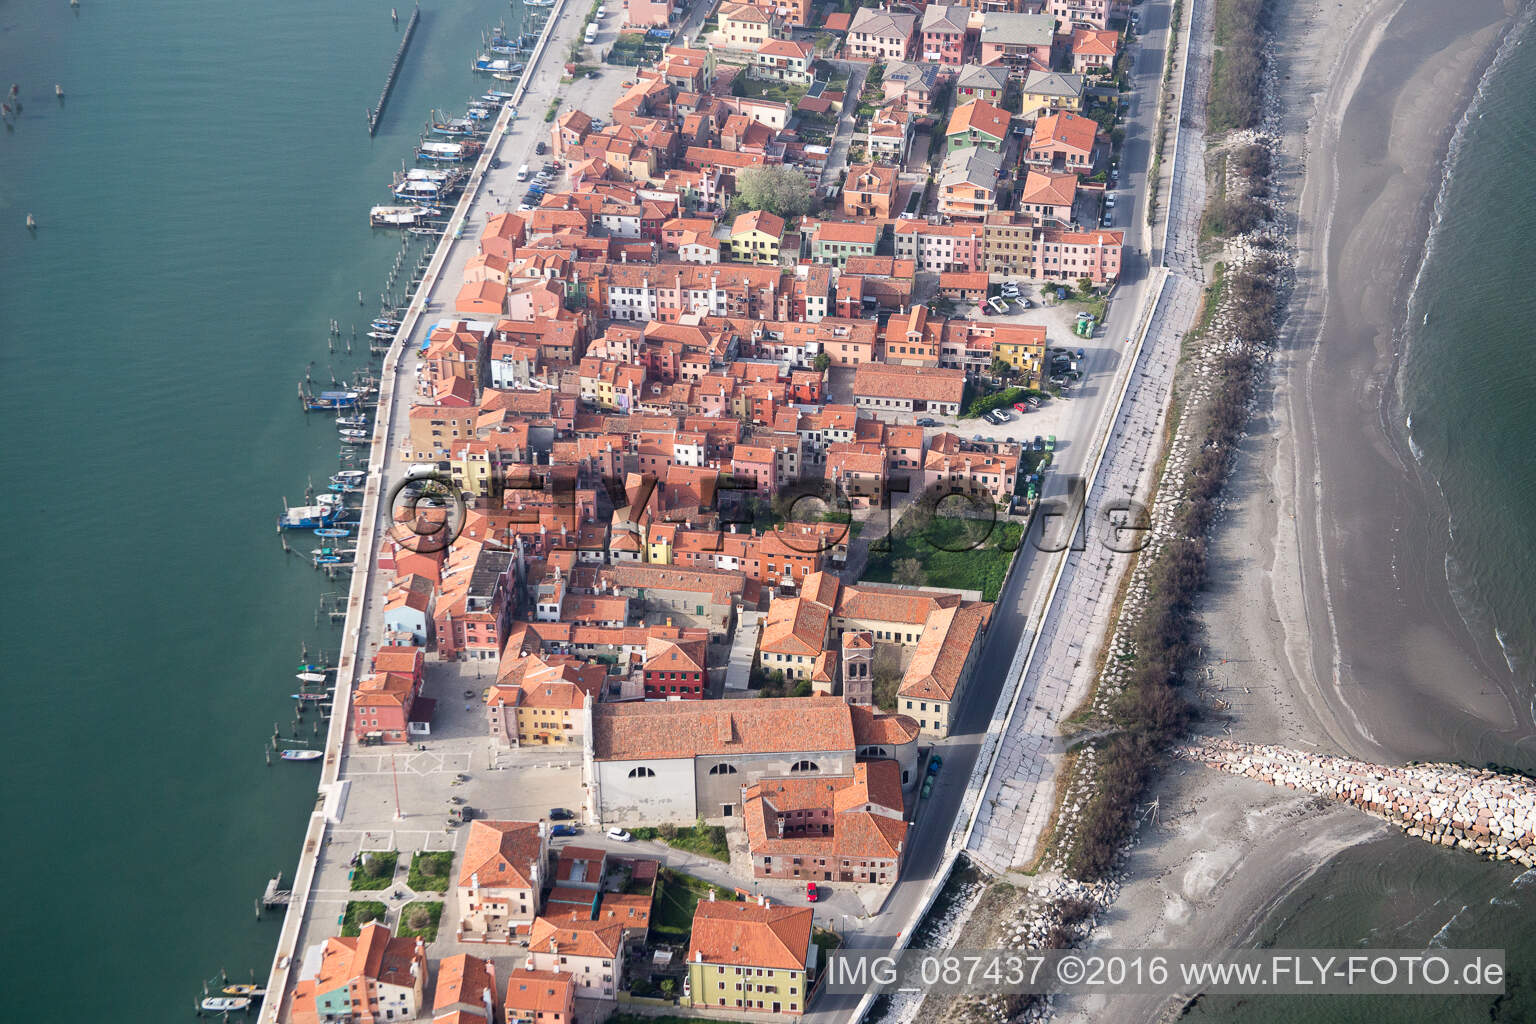 Siedlungsgebiet im Ortsteil Pellestrina in Venedig in Venetien, Italien aus der Luft